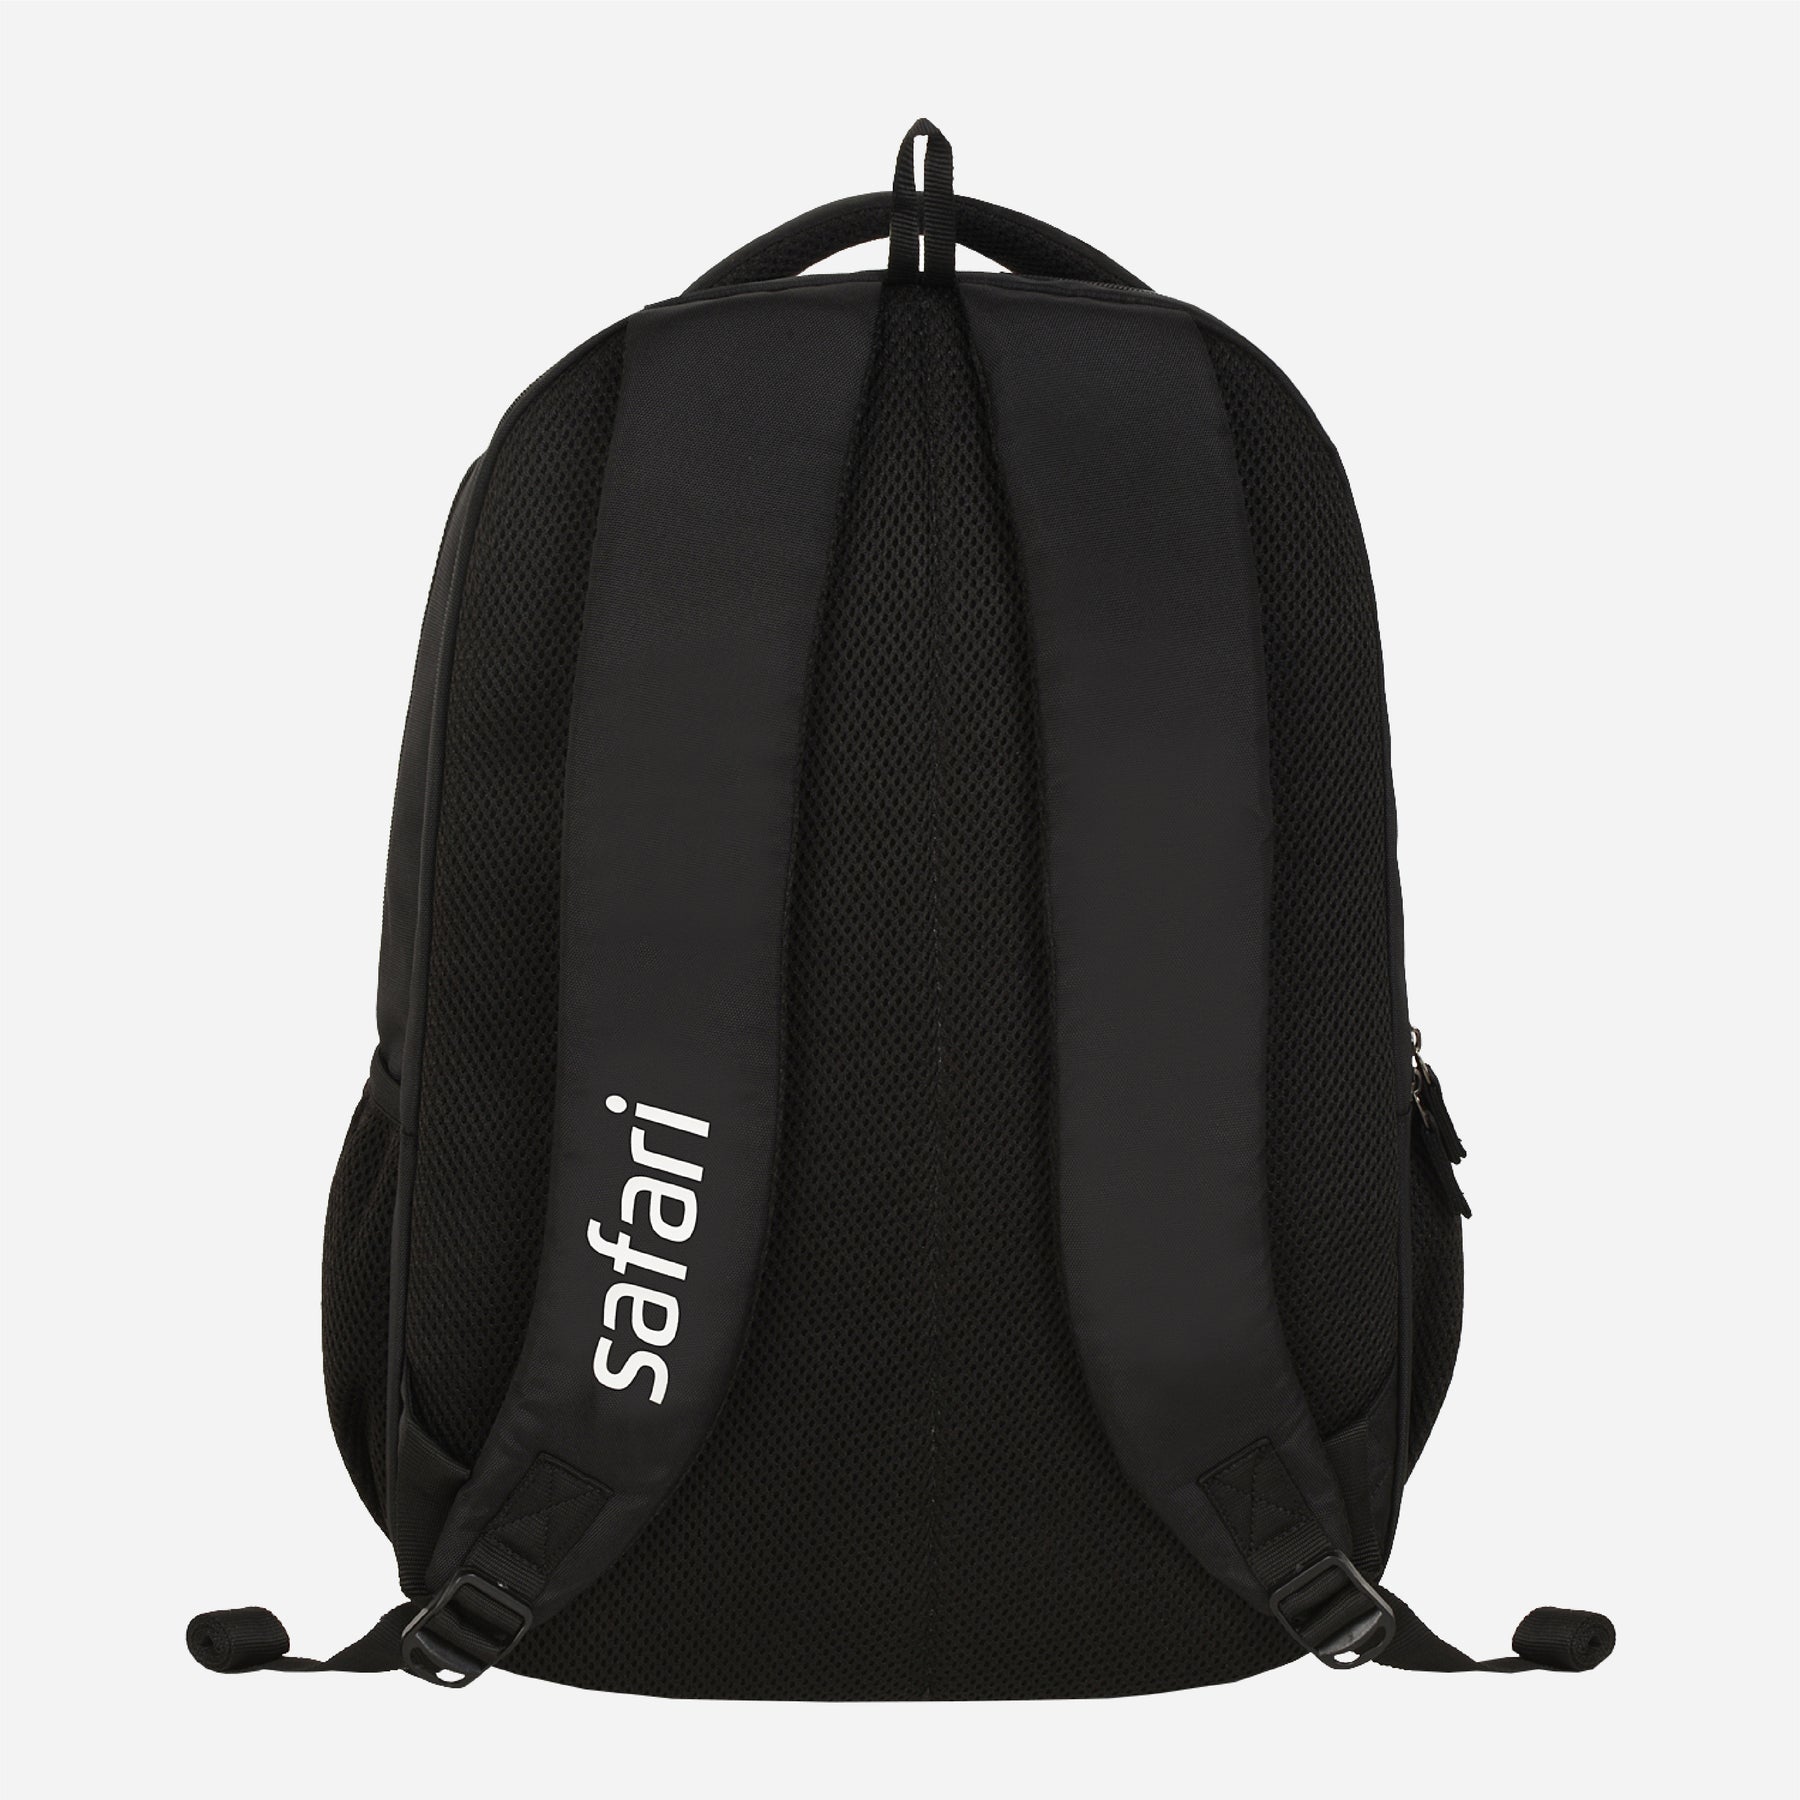 Snap Laptop Backpack - Black